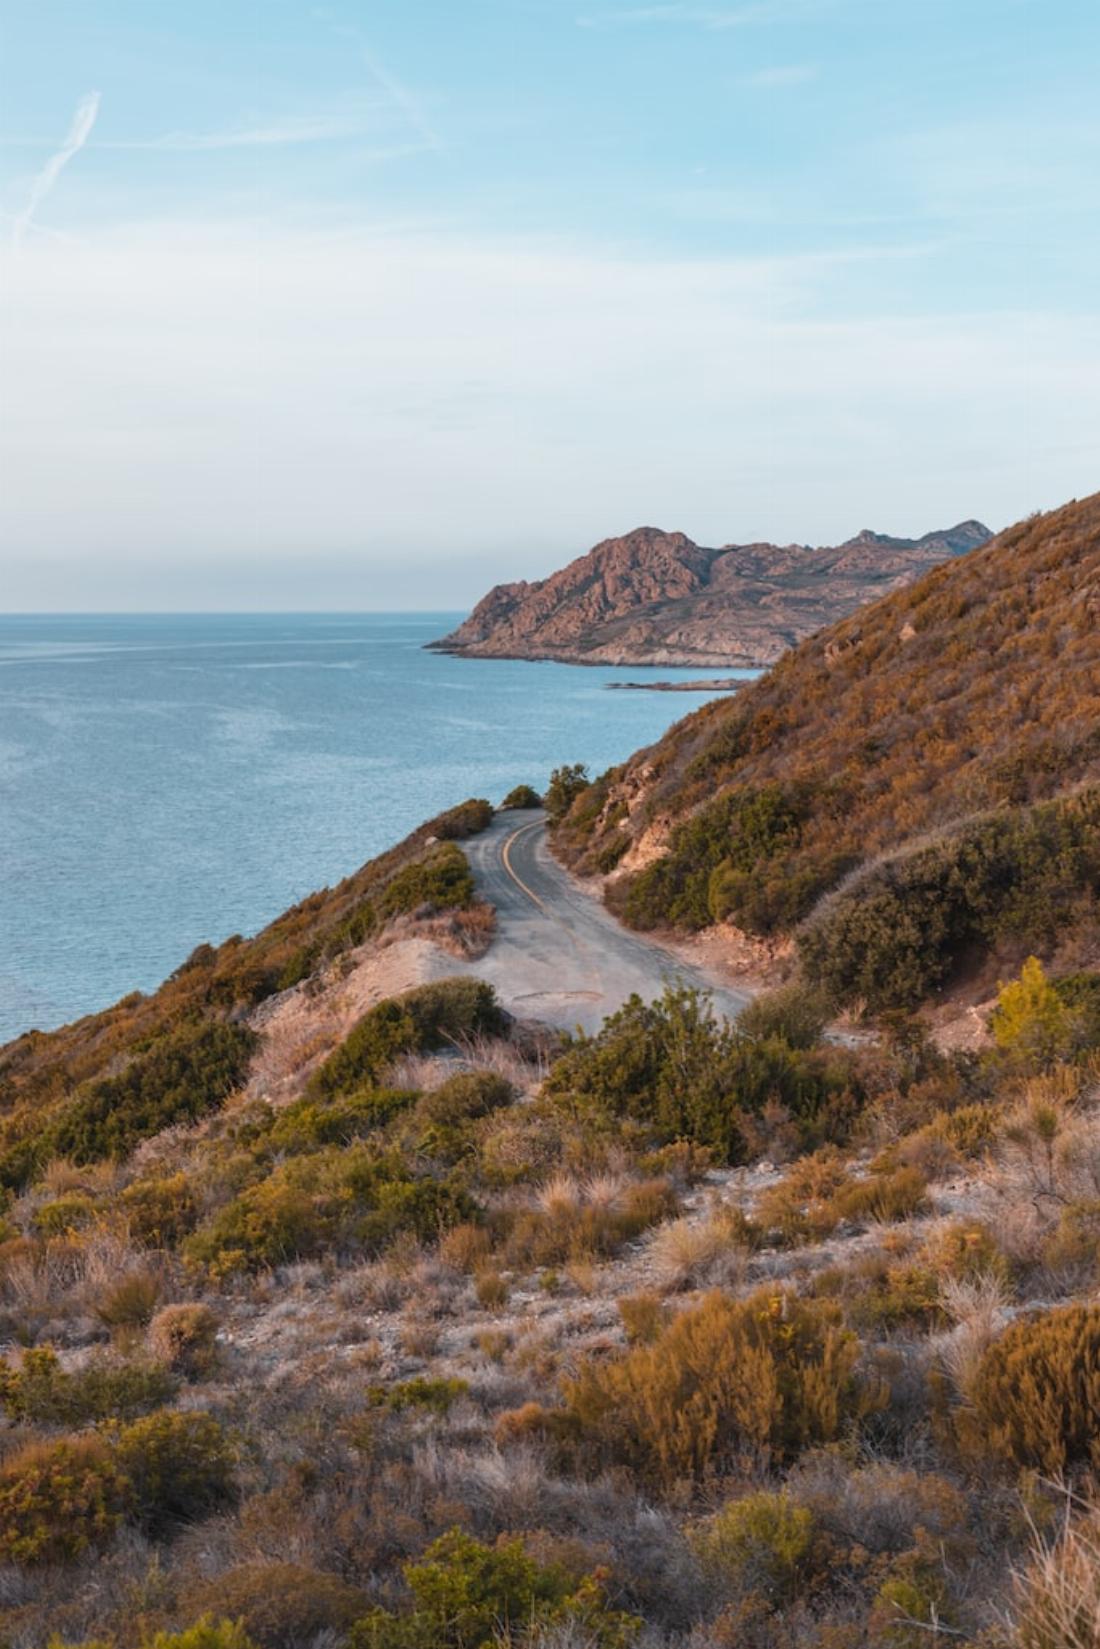 Route de montagne longeant la mer en Corse